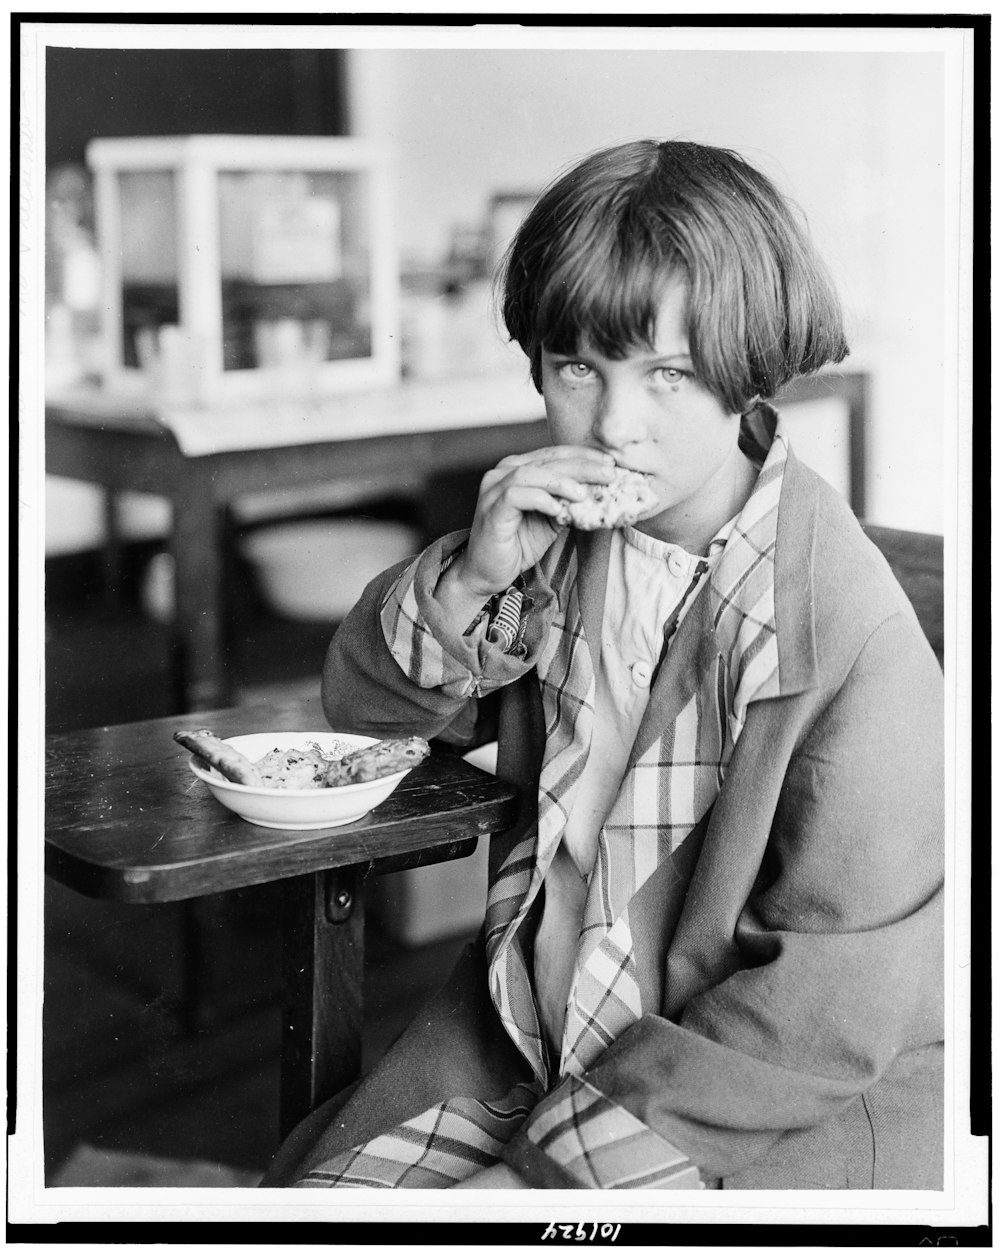 Victime de la sécheresse, une jeune fille de l’école Duncan Consolidated dans le Mississippi, mangeant des biscuits aux raisins de Corinthe, venus de Grèce par l’intermédiaire de la Croix-Rouge junior de ce pays.